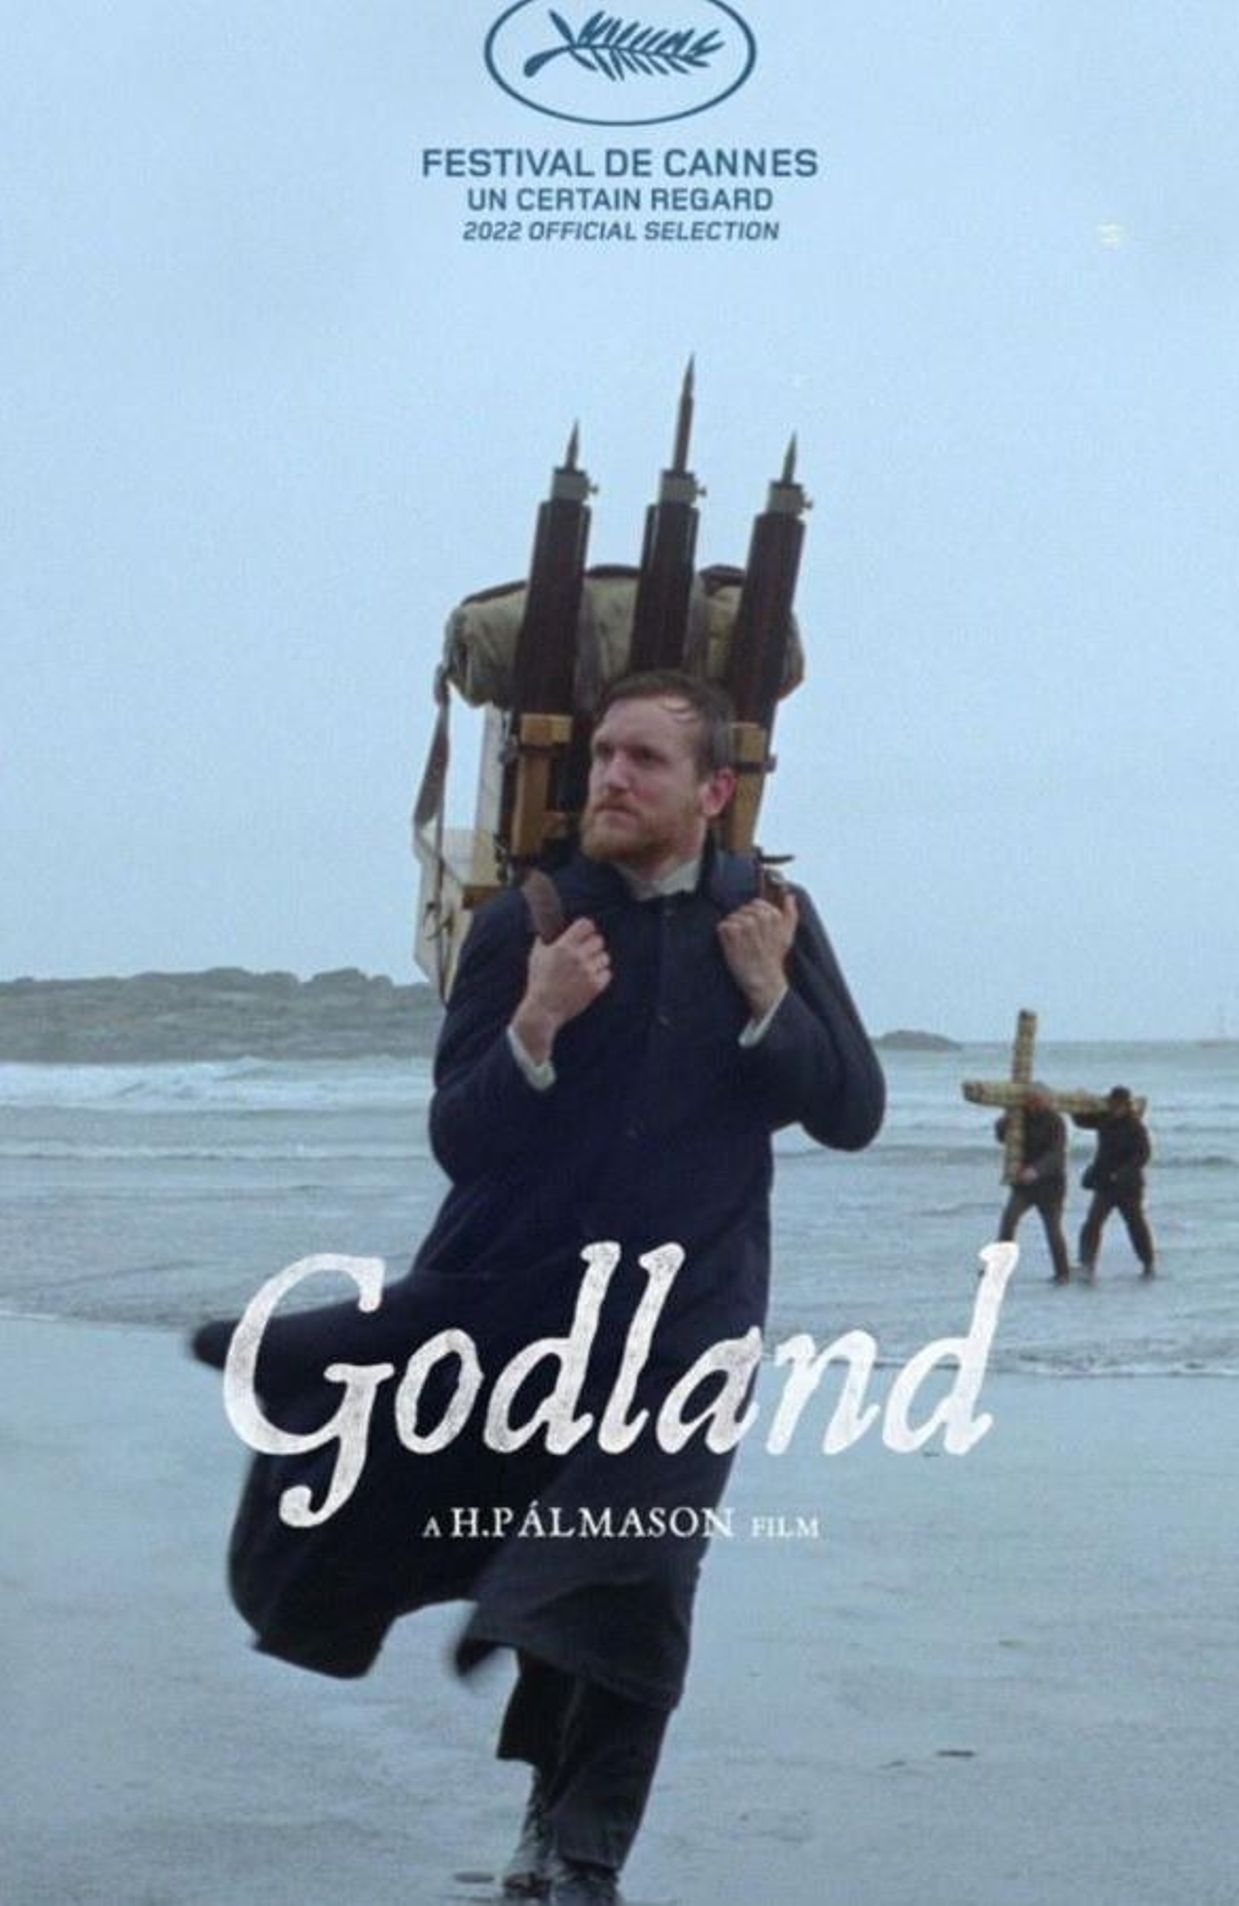 L'affiche de "Godland"